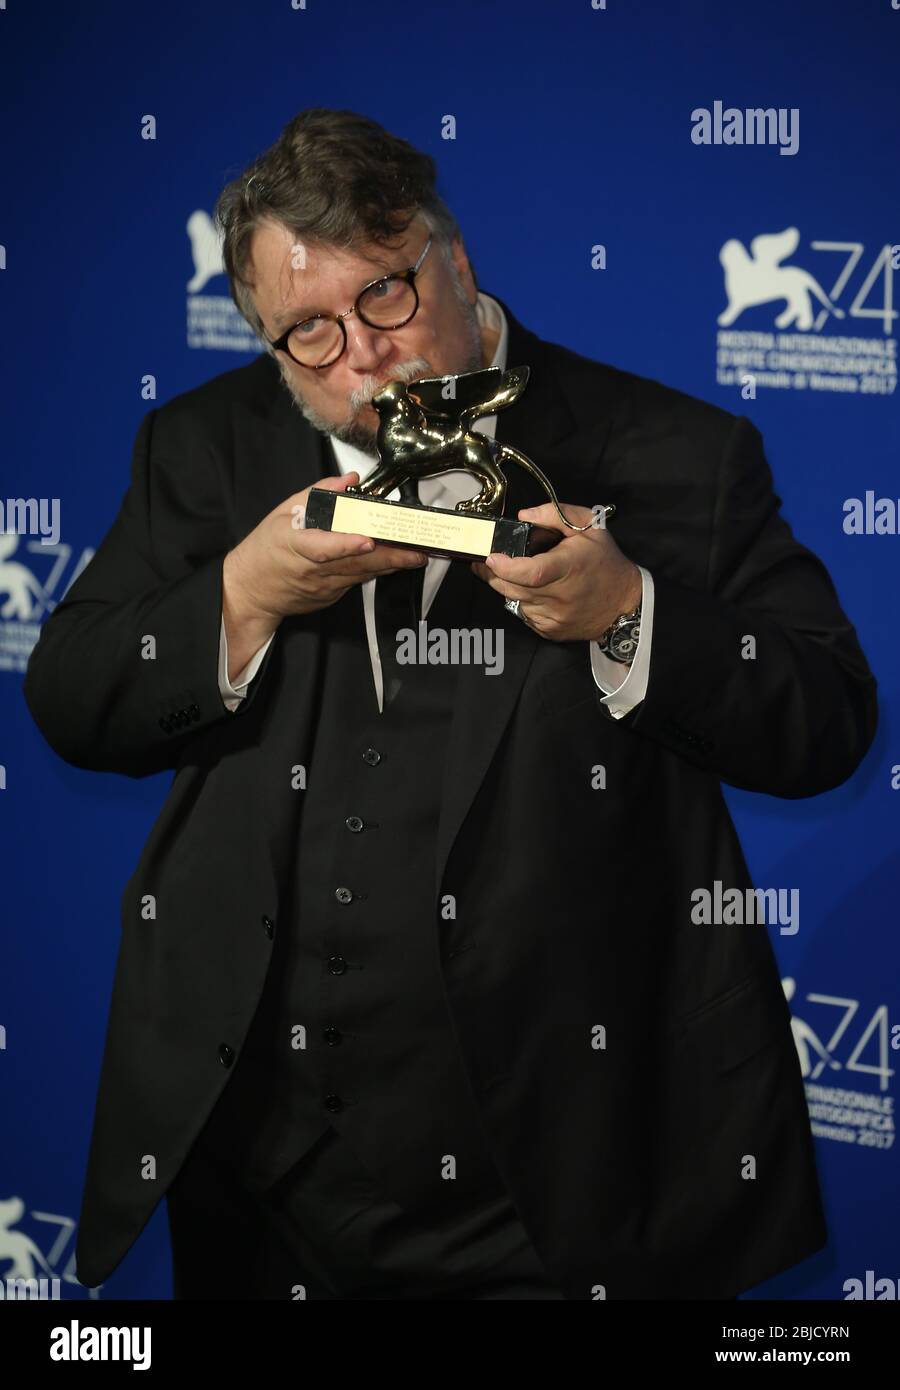 Venecia, Italia. 09 de septiembre de 2017: Guillermo del Toro posa con el León de Oro al mejor Premio de Cine por 'la forma del agua' Foto de stock